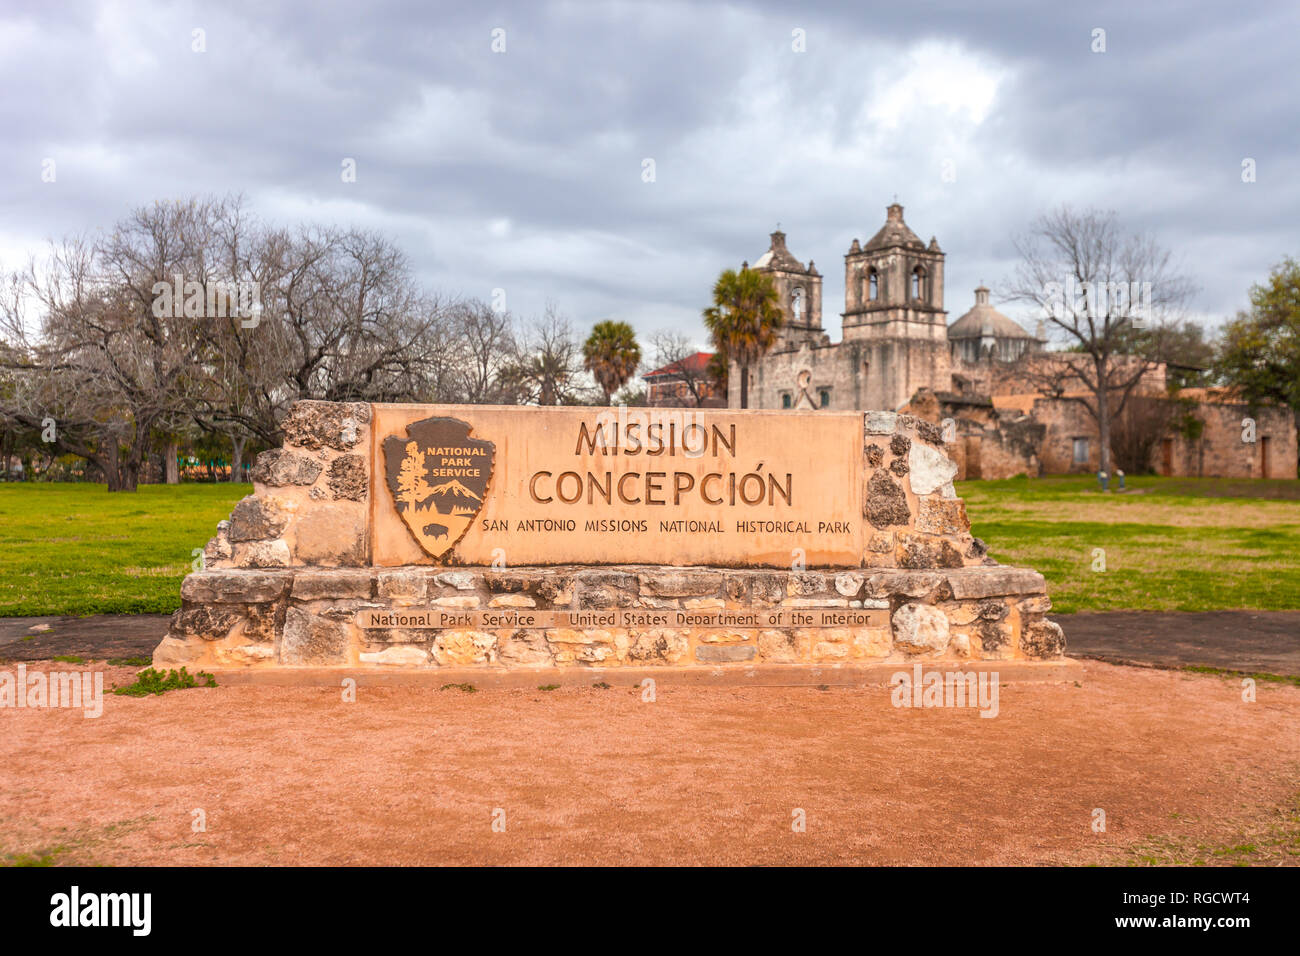 SAN ANTONIO, TEXAS - 26 gennaio 2019 - Missione concezione ingresso - esempio di architettura coloniale Spagnola - Sito UNESCO Foto Stock